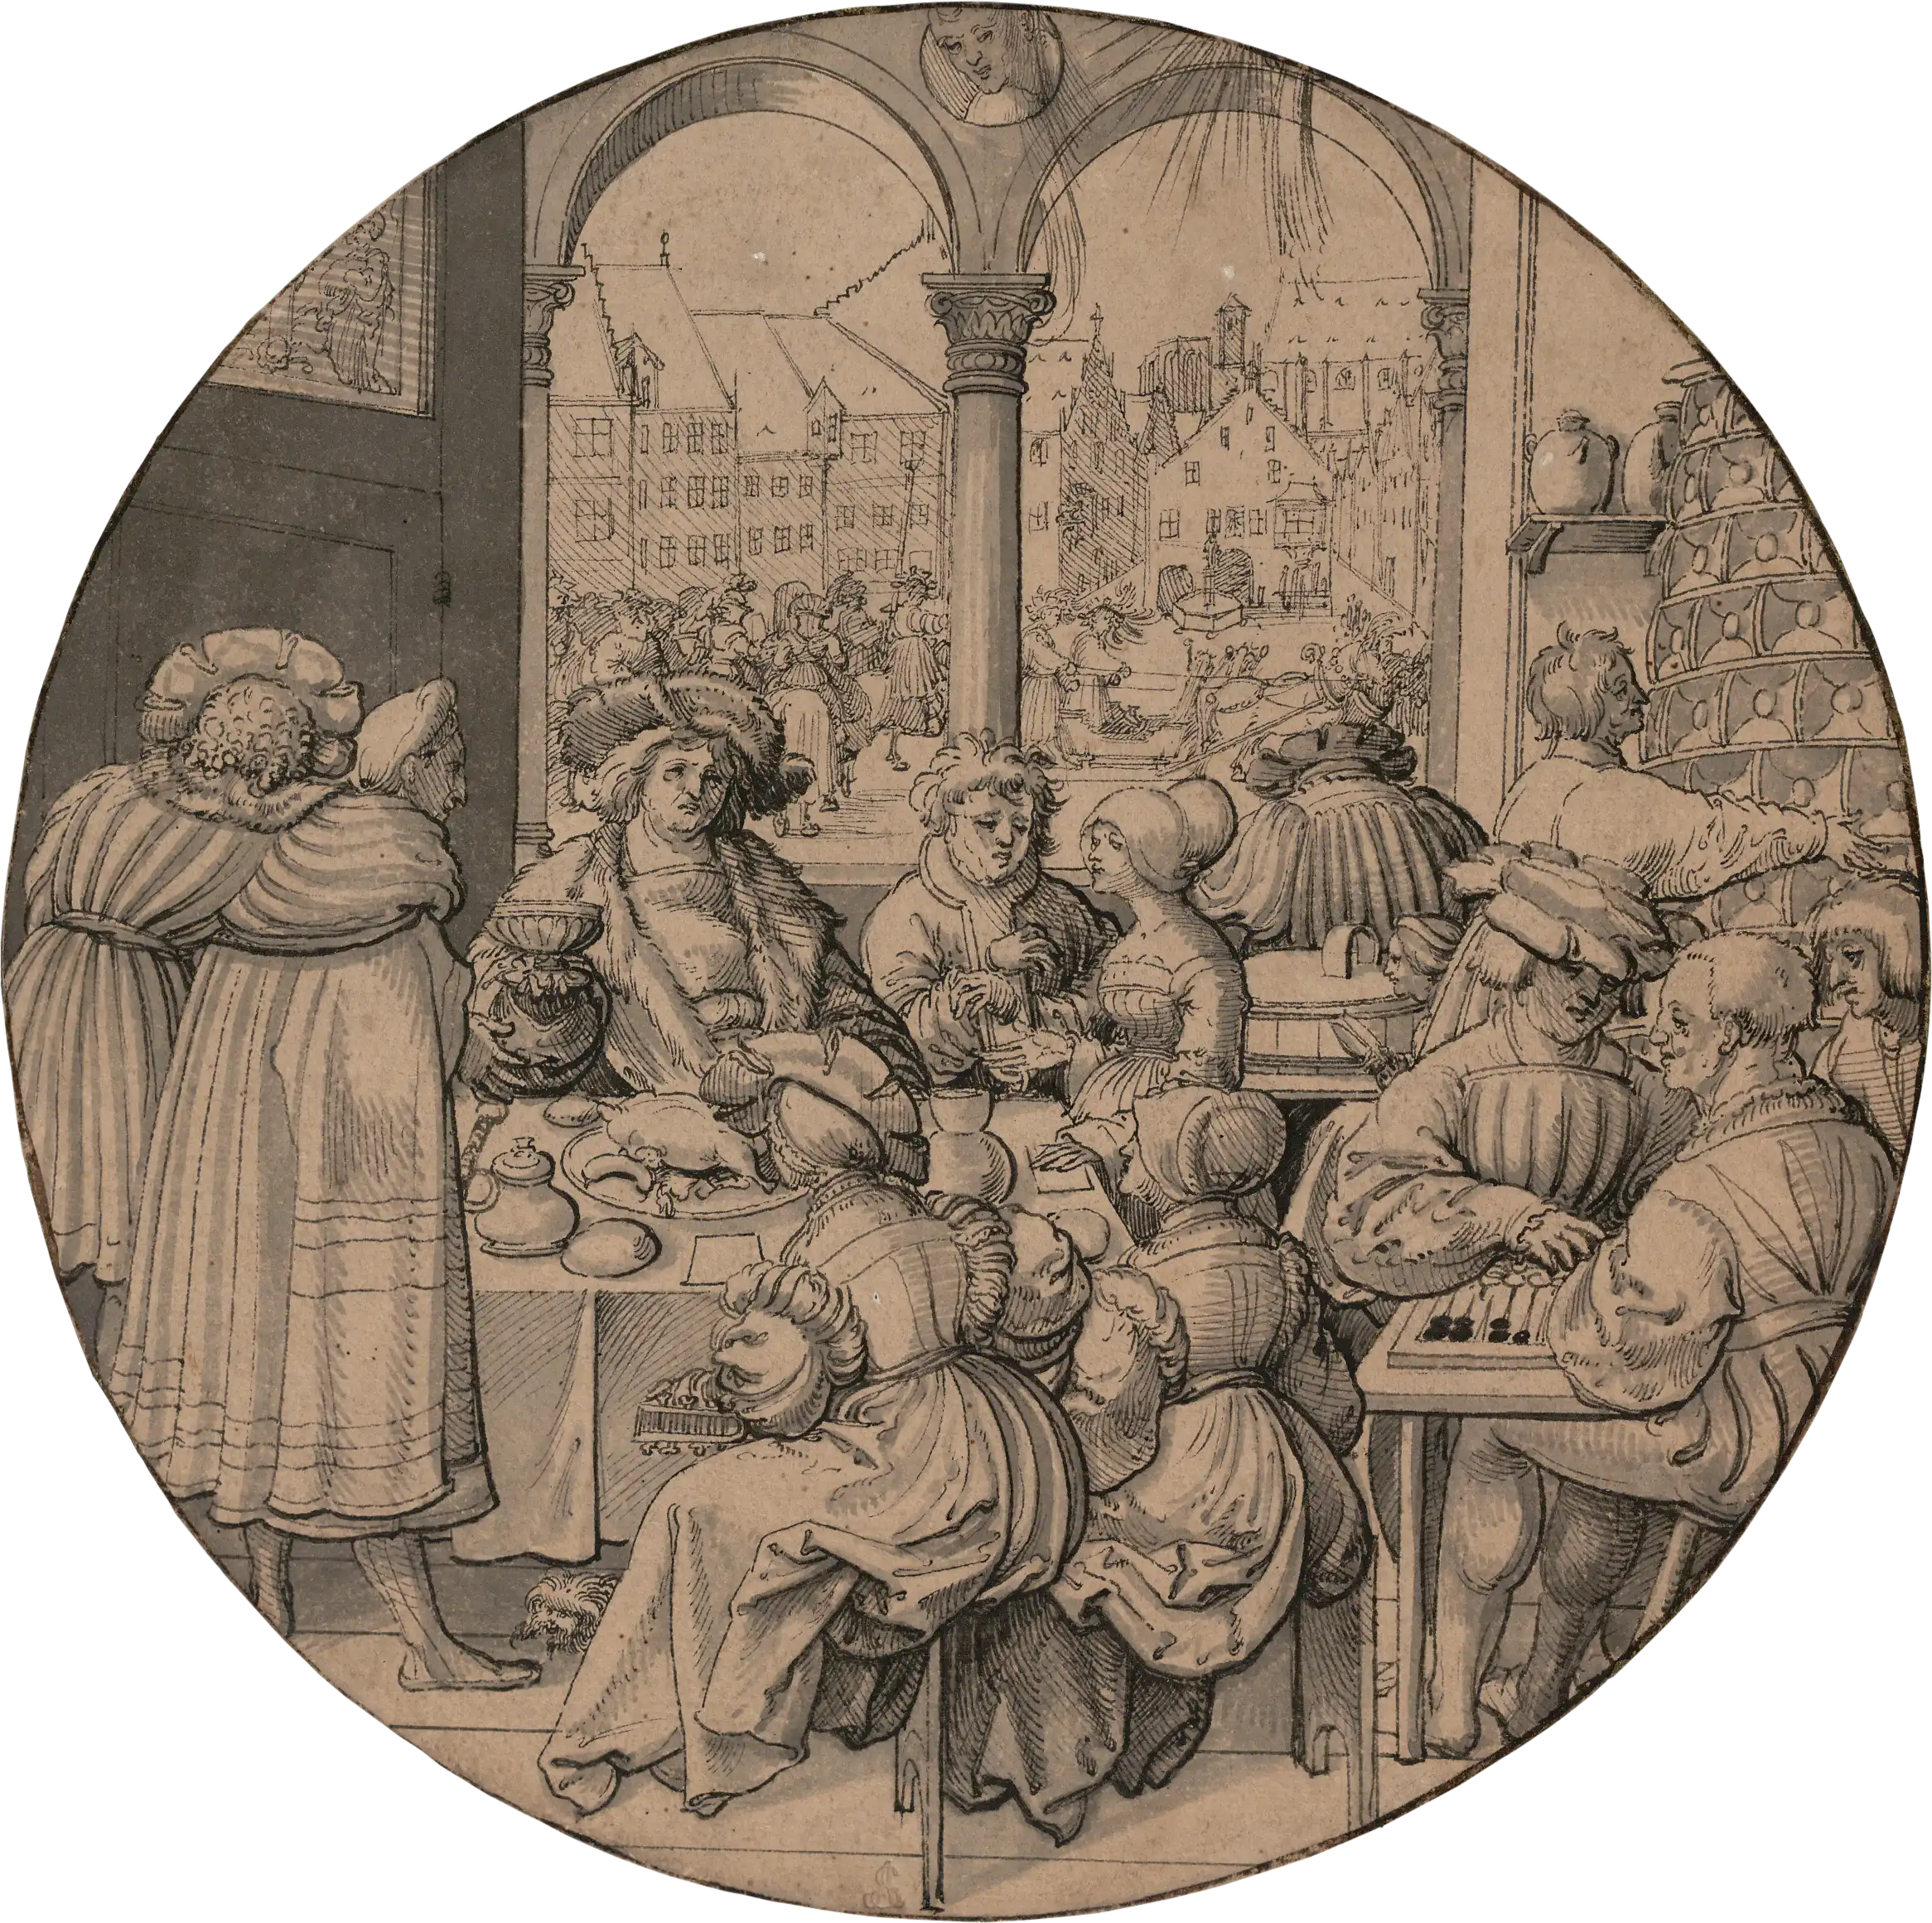 Jörg Breu d. Ä., Scheibenriss mit der Darstellung des Monats Januar, um 1520